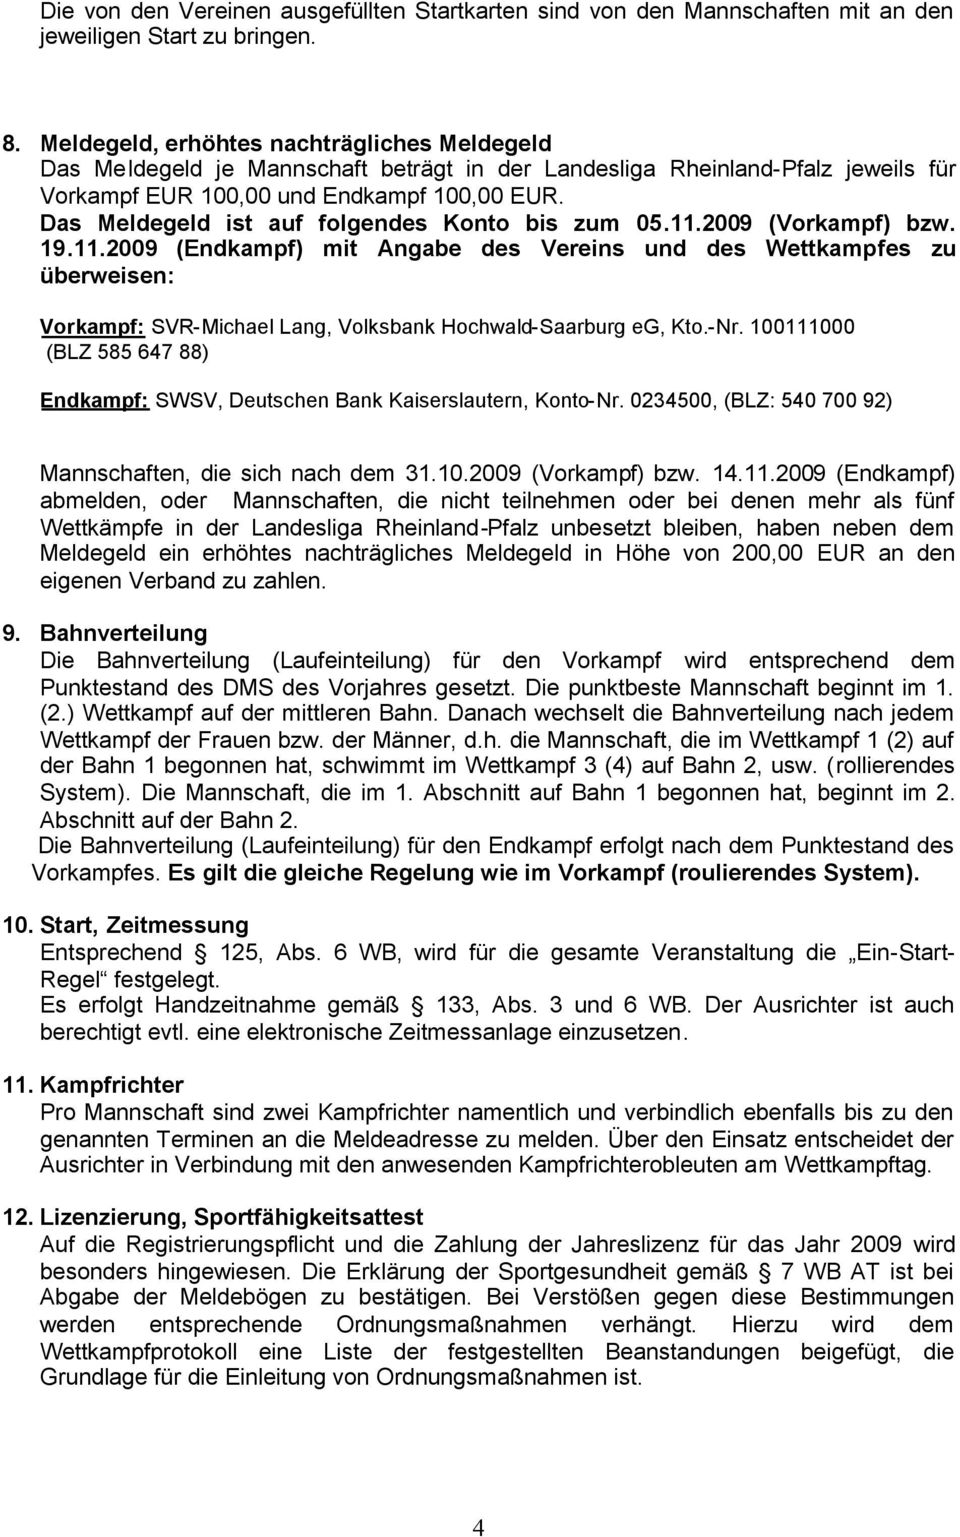 Das Meldegeld ist auf folgendes Konto bis zum 05.11.2009 (Vorkampf) bzw. 19.11.2009 (Endkampf) mit Angabe des Vereins und des Wettkampfes zu überweisen: Vorkampf: SVR-Michael Lang, Volksbank Hochwald-Saarburg eg, Kto.